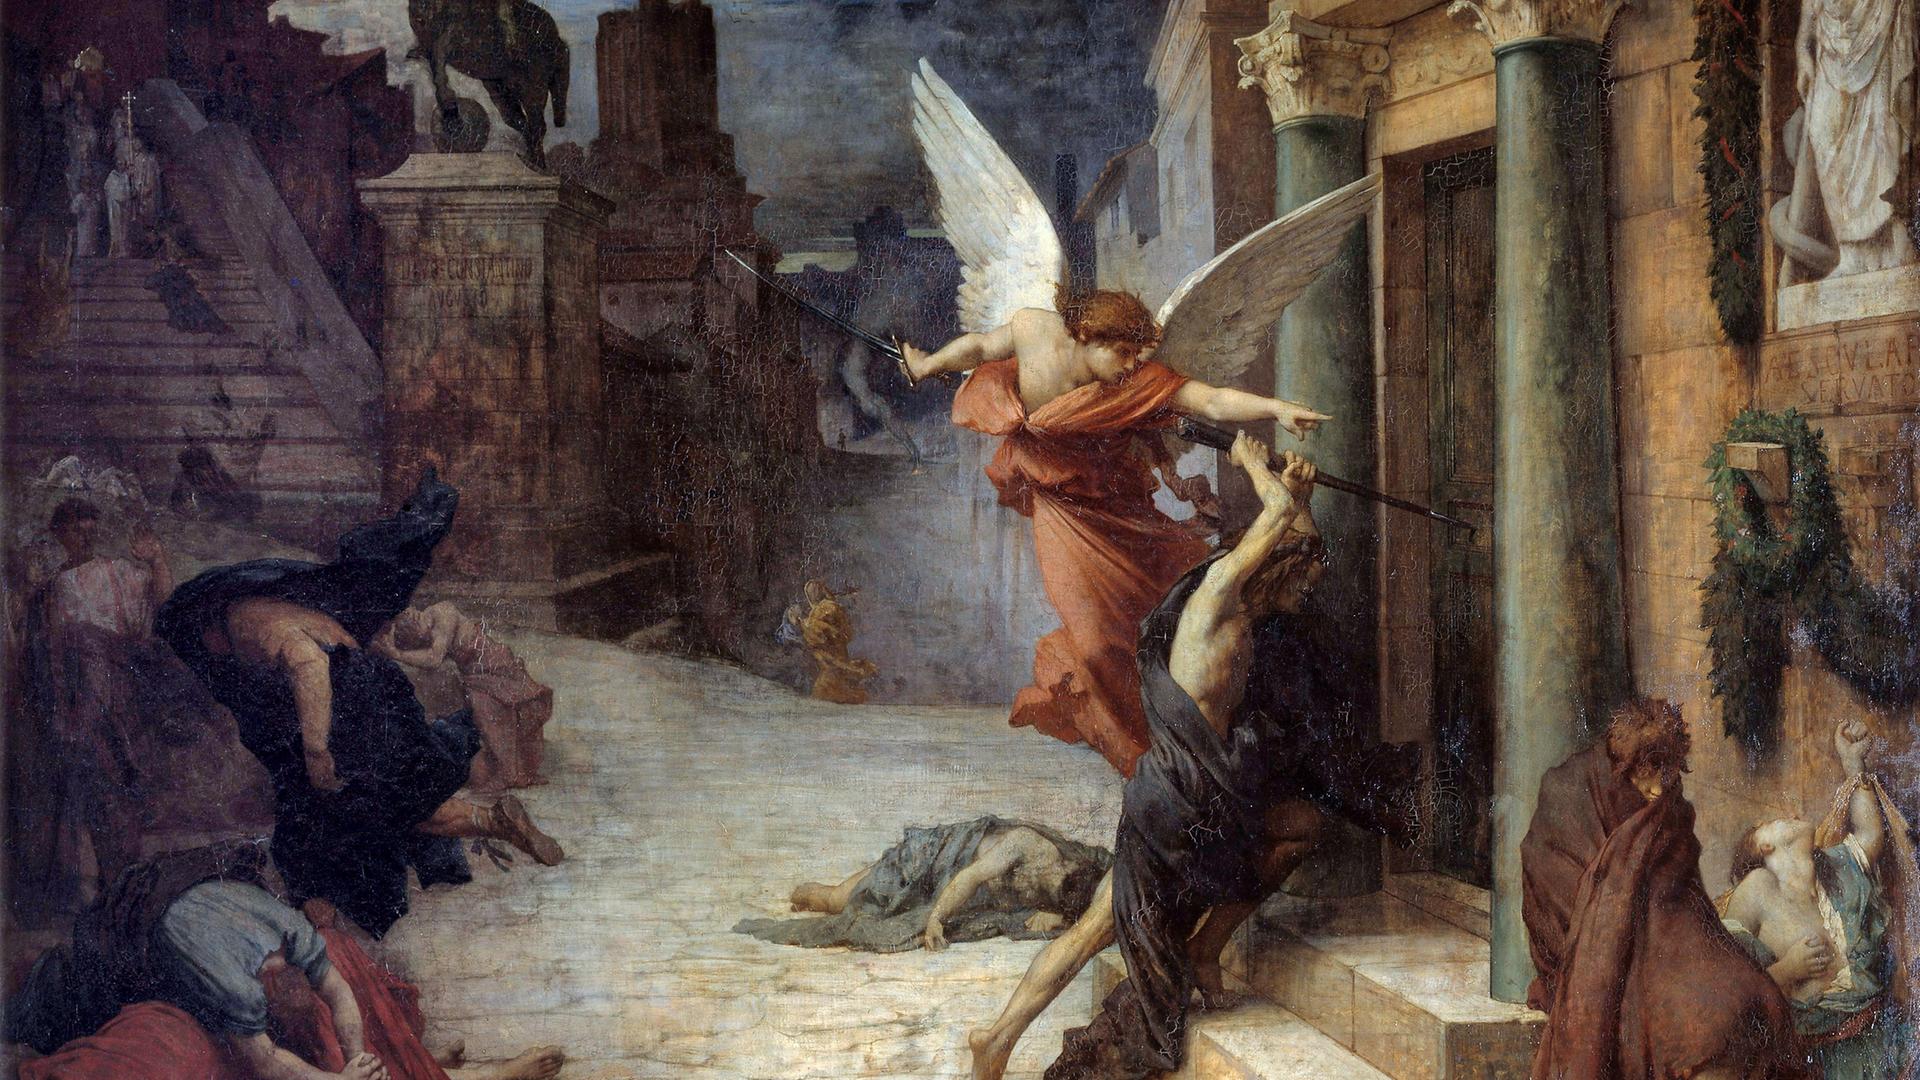 Reproduktion des Gemäldes "Die Pest in Rom". Eine allegorische Darstellung der Geißel, die die Türen einbricht. Gemälde von Jules Elie Delaunay (1828-1891), 1869. 1,31 x 1,76 m. Orsay-Museum, Paris